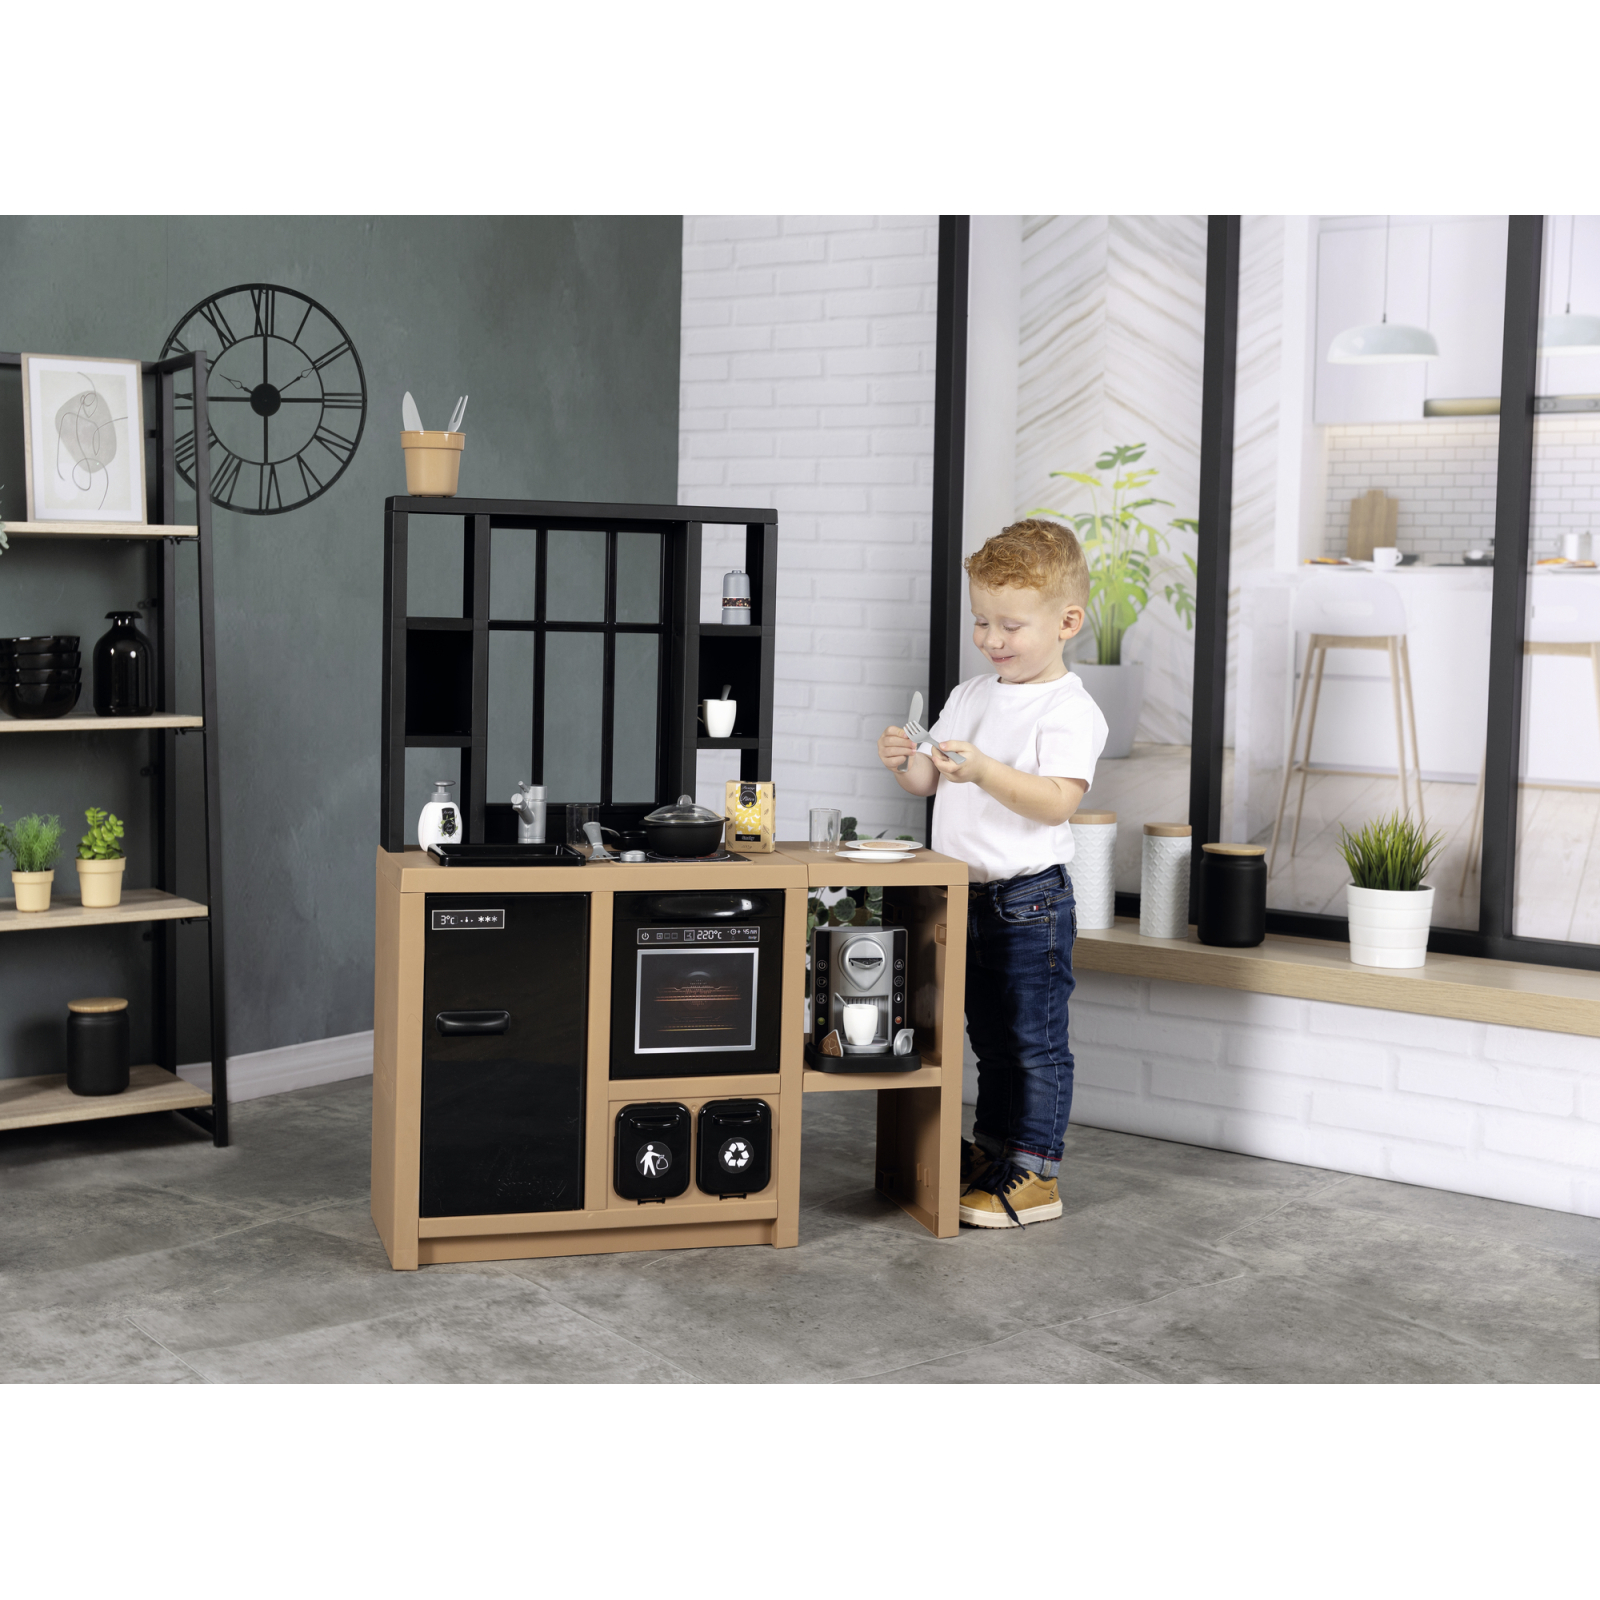 Игровой набор Smoby Интерактивная кухня Лофт с кофеваркой, аксессуарами и звуковым эффектом (312600) изображение 15